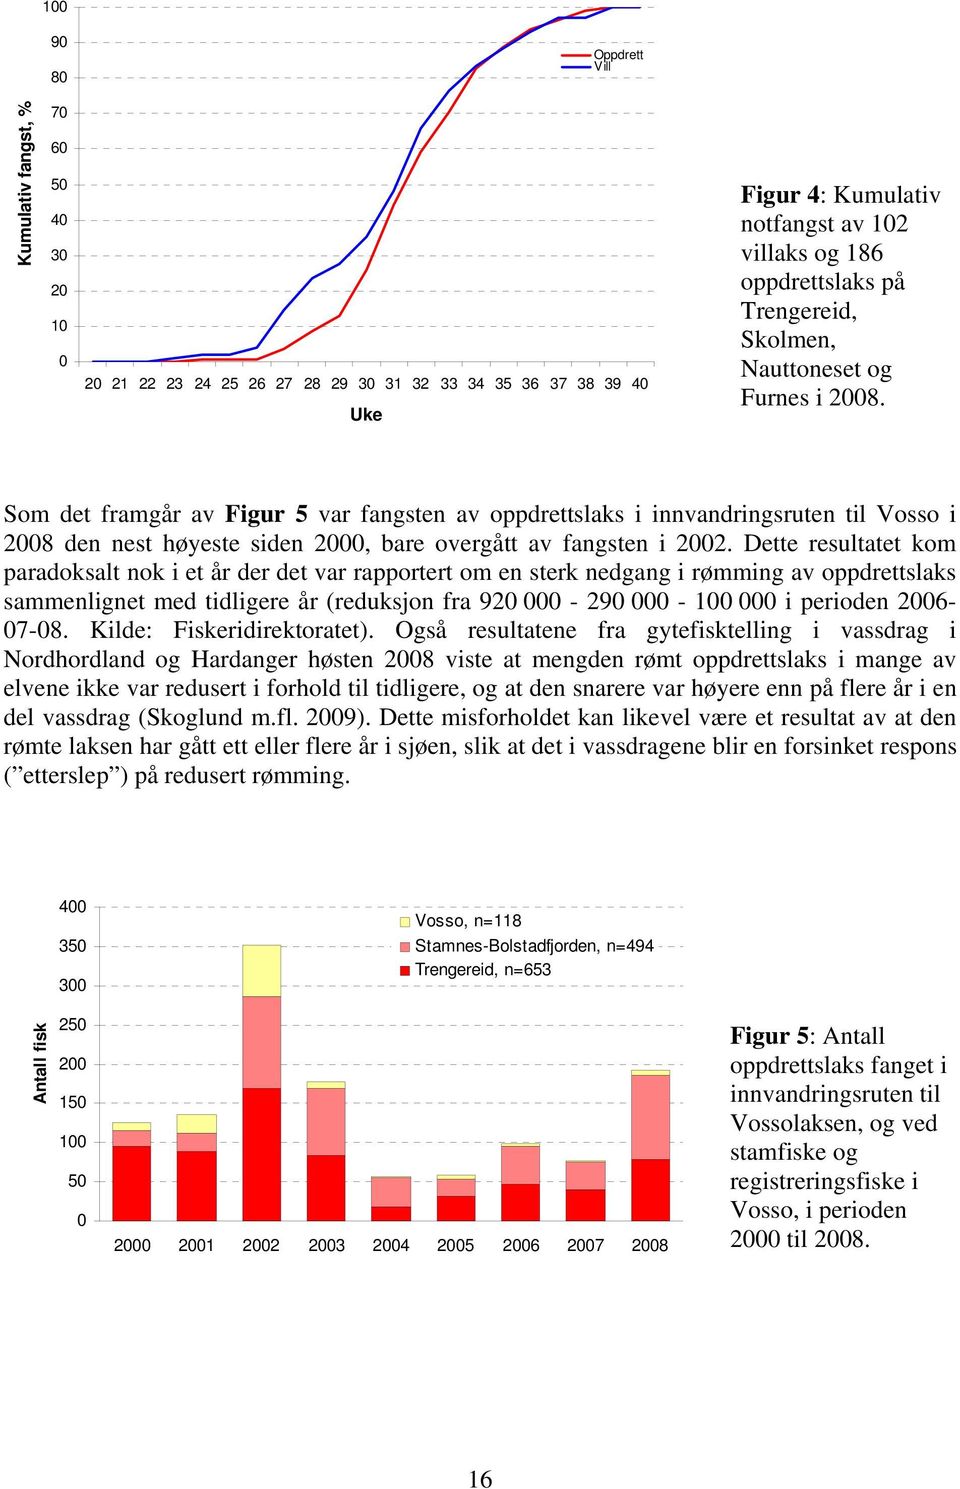 Som det framgår av Figur 5 var fangsten av oppdrettslaks i innvandringsruten til Vosso i 2008 den nest høyeste siden 2000, bare overgått av fangsten i 2002.